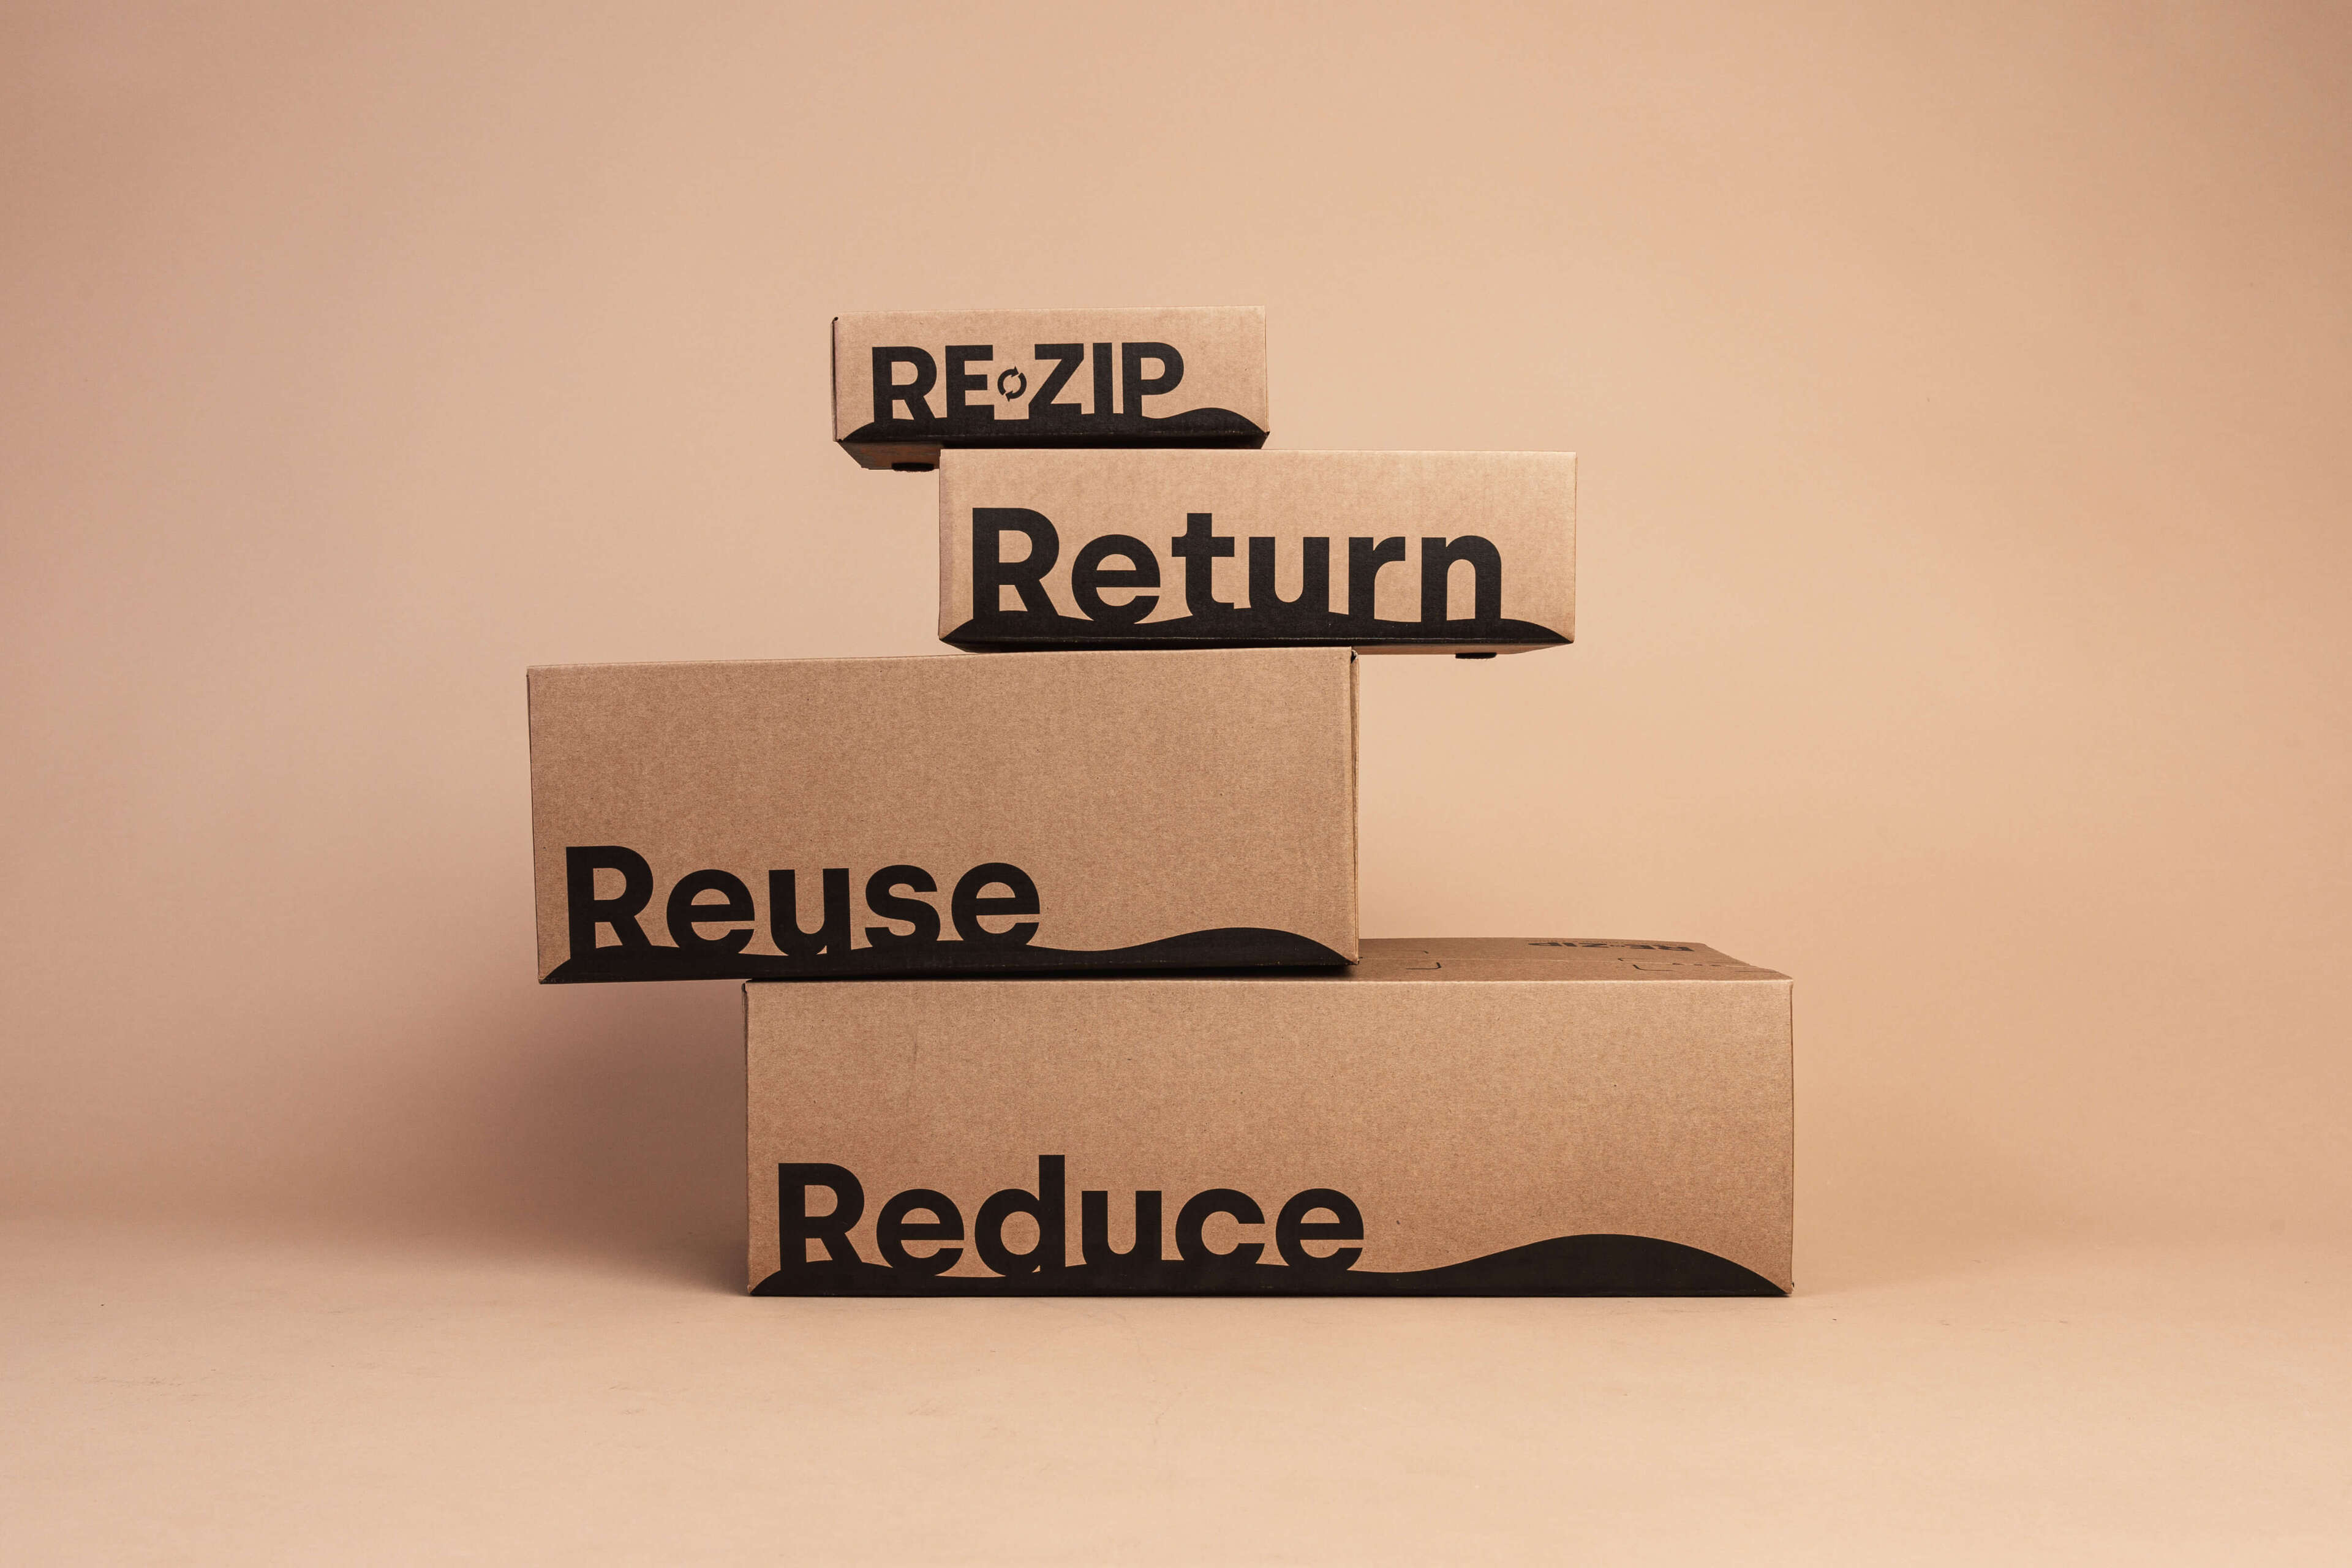 Æsker fra RE-ZIP stablet ovenpå hinanden med teksten "RE-ZIP, Return, Reuse, Reduce"